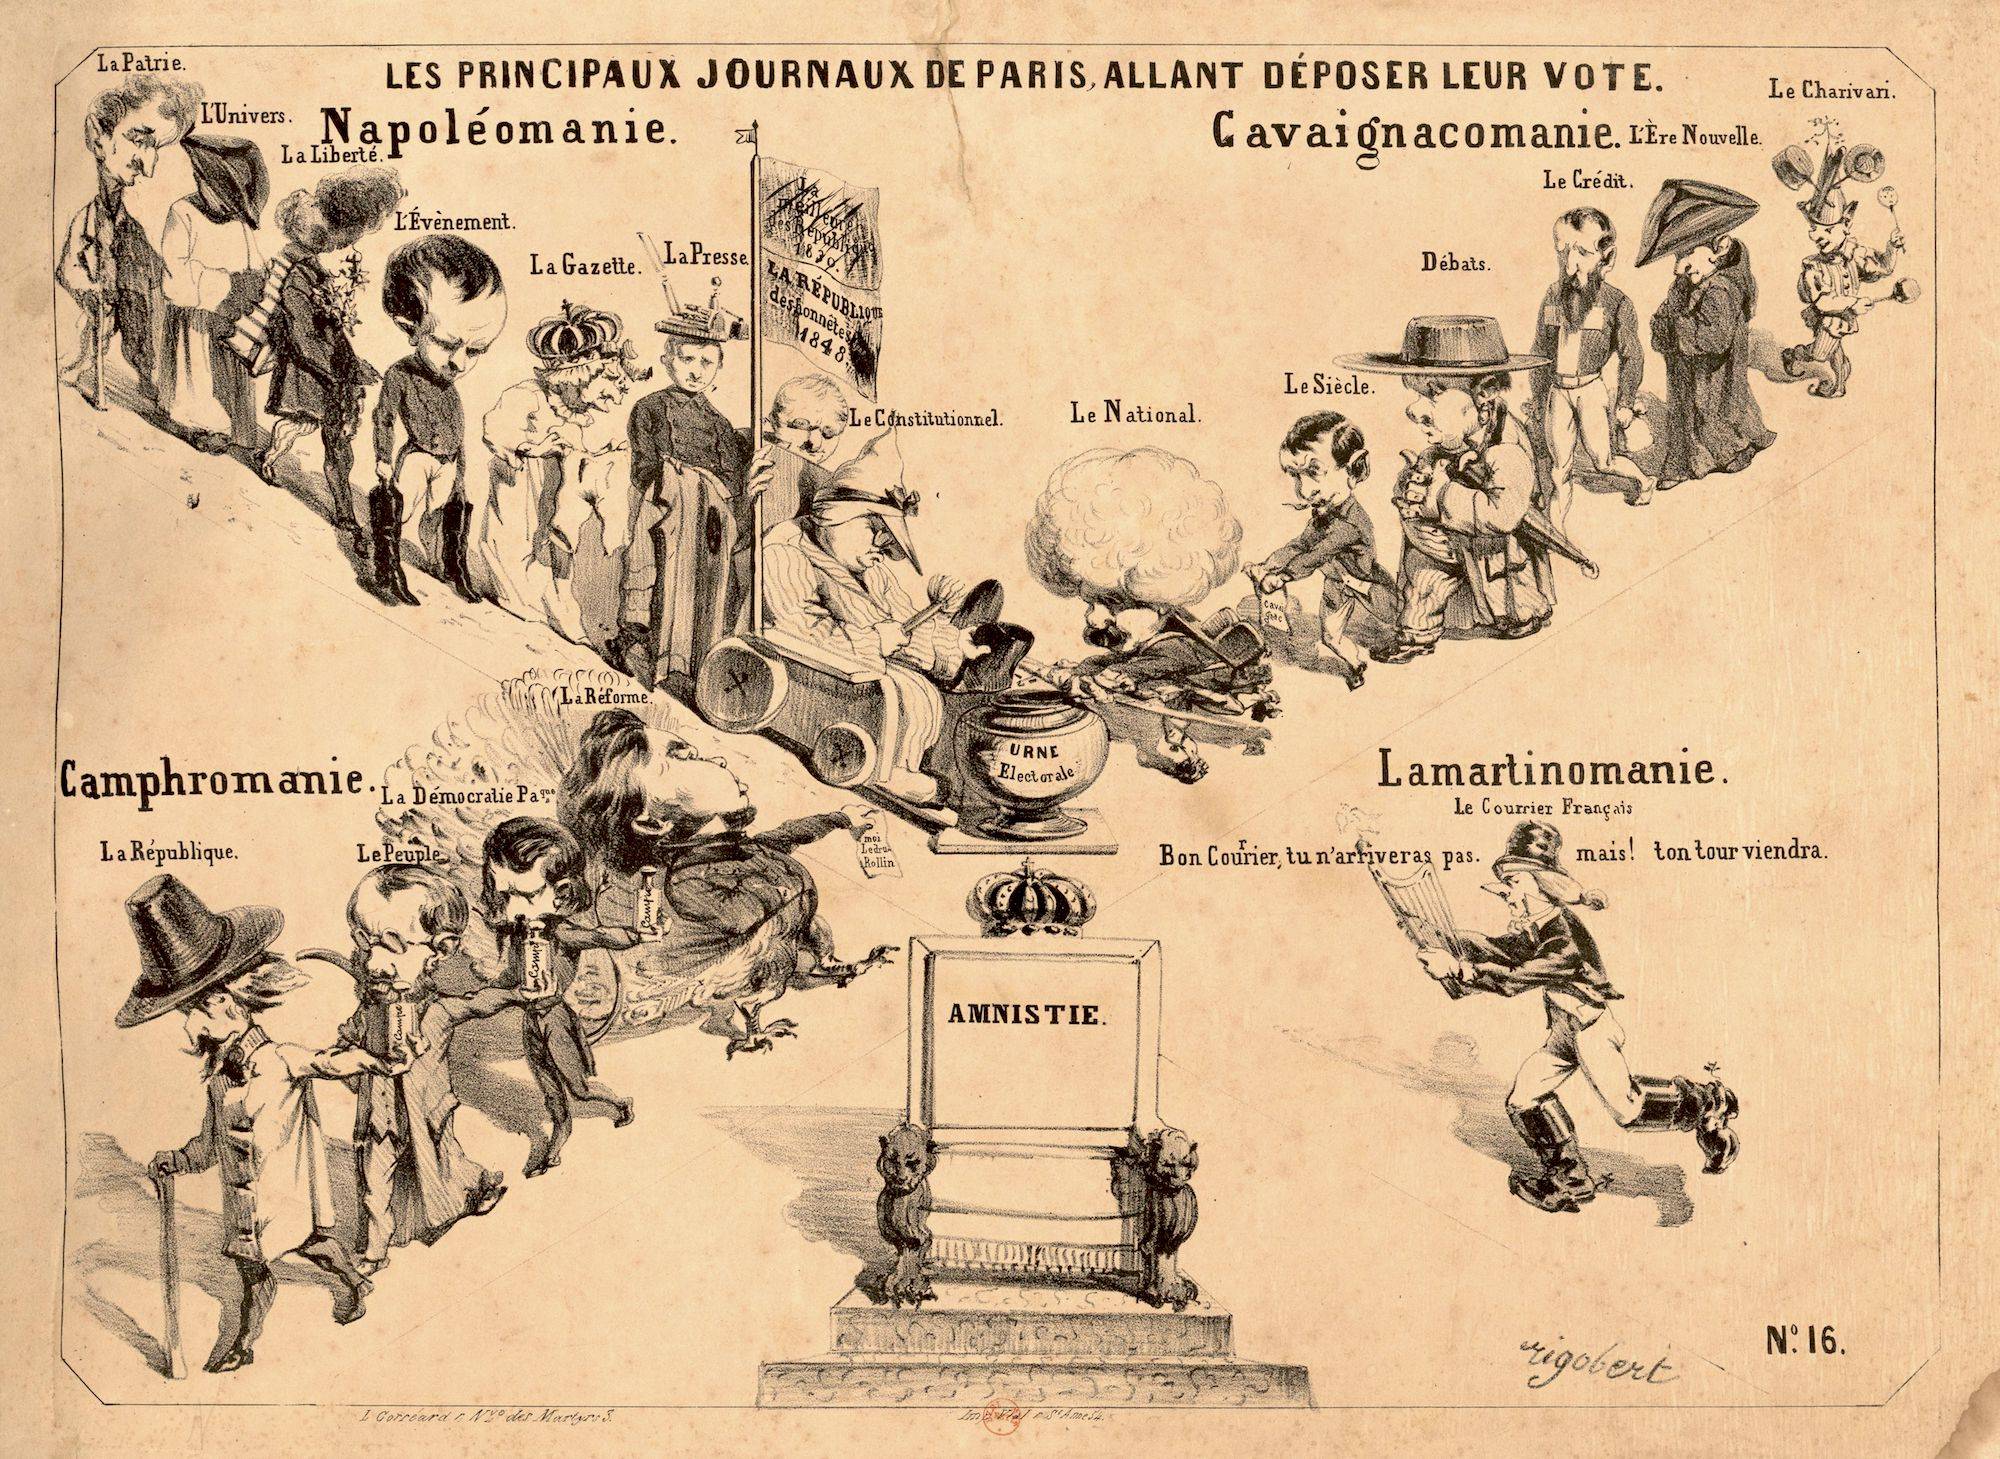 Les principaux journaux de Paris, allant déposer leur vote, 1848 - source : Gallica-BnF